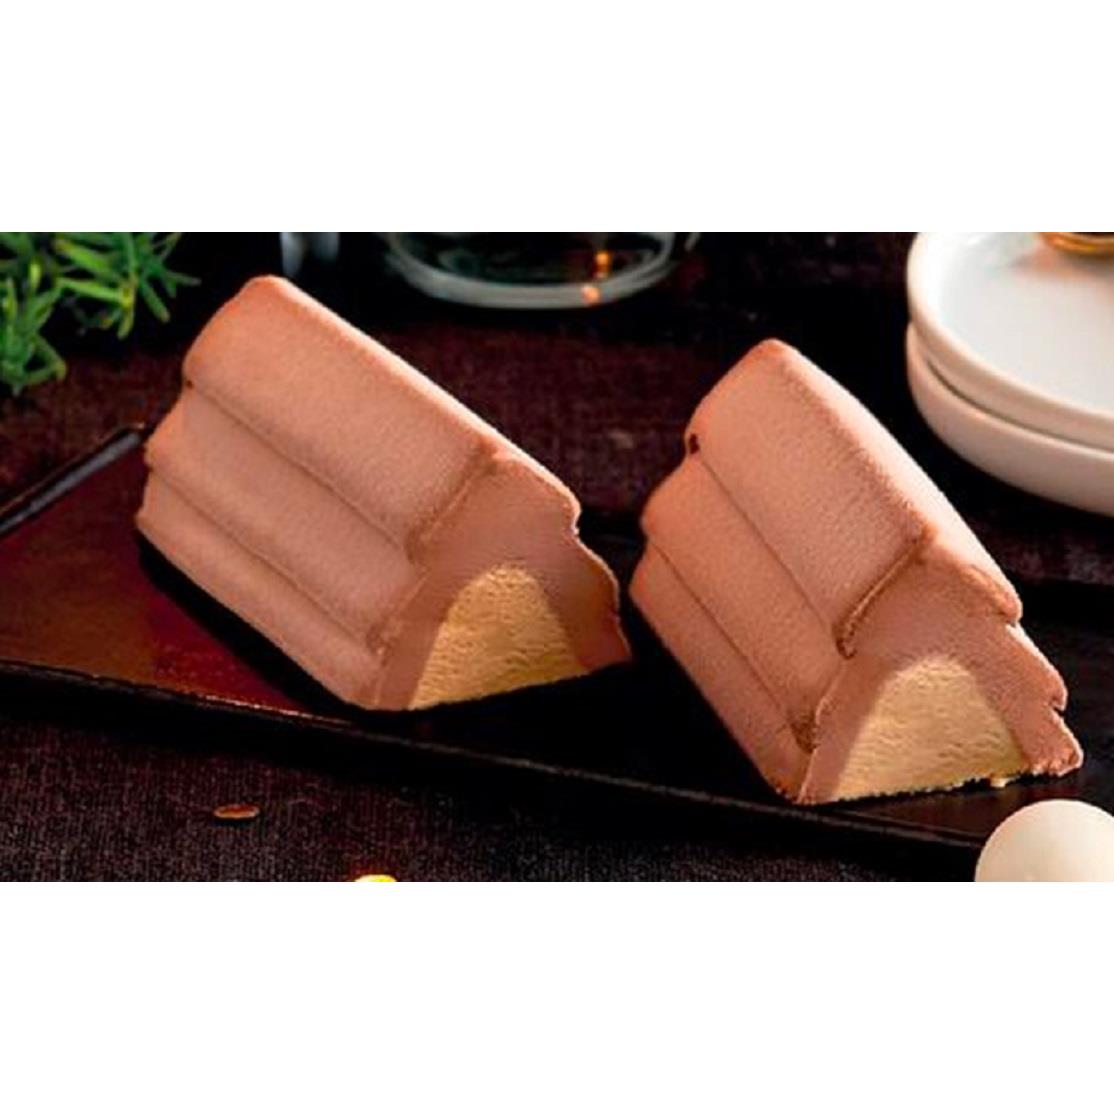 【冷凍店取-picard】巧克力鹹奶油冰淇淋卷2入(240gx1)